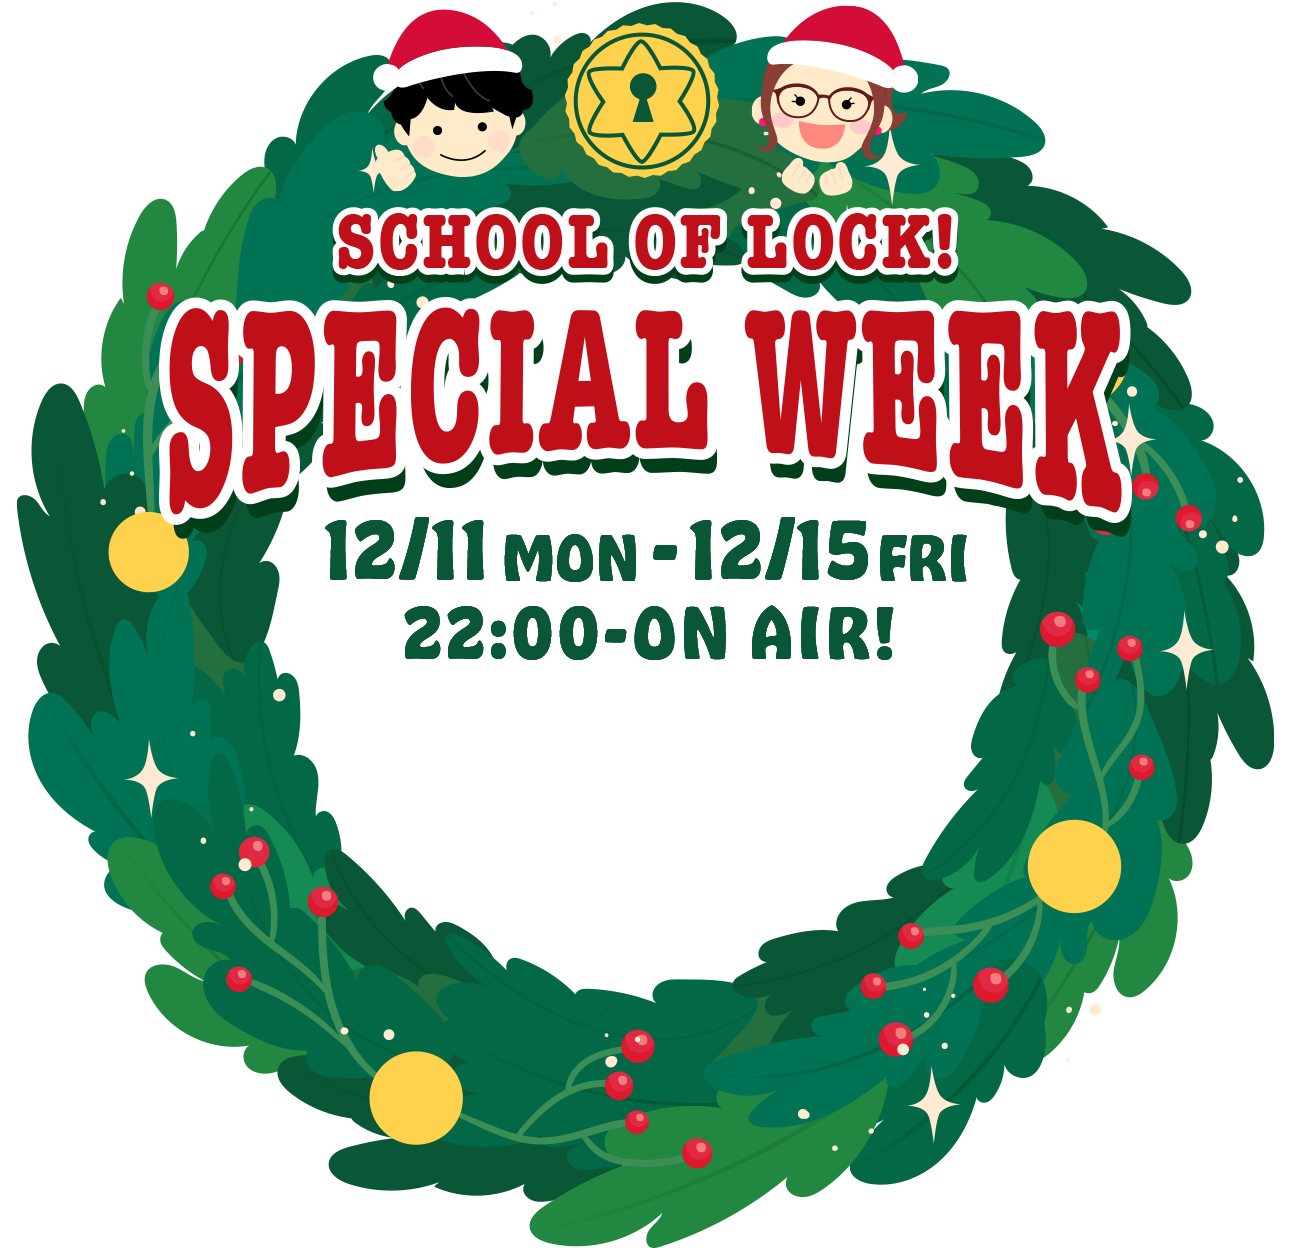 SCHOOL OF LOCK! SPECIAL WEEK 12/11 MON-12/15 FRI 22:00- ON AIR!